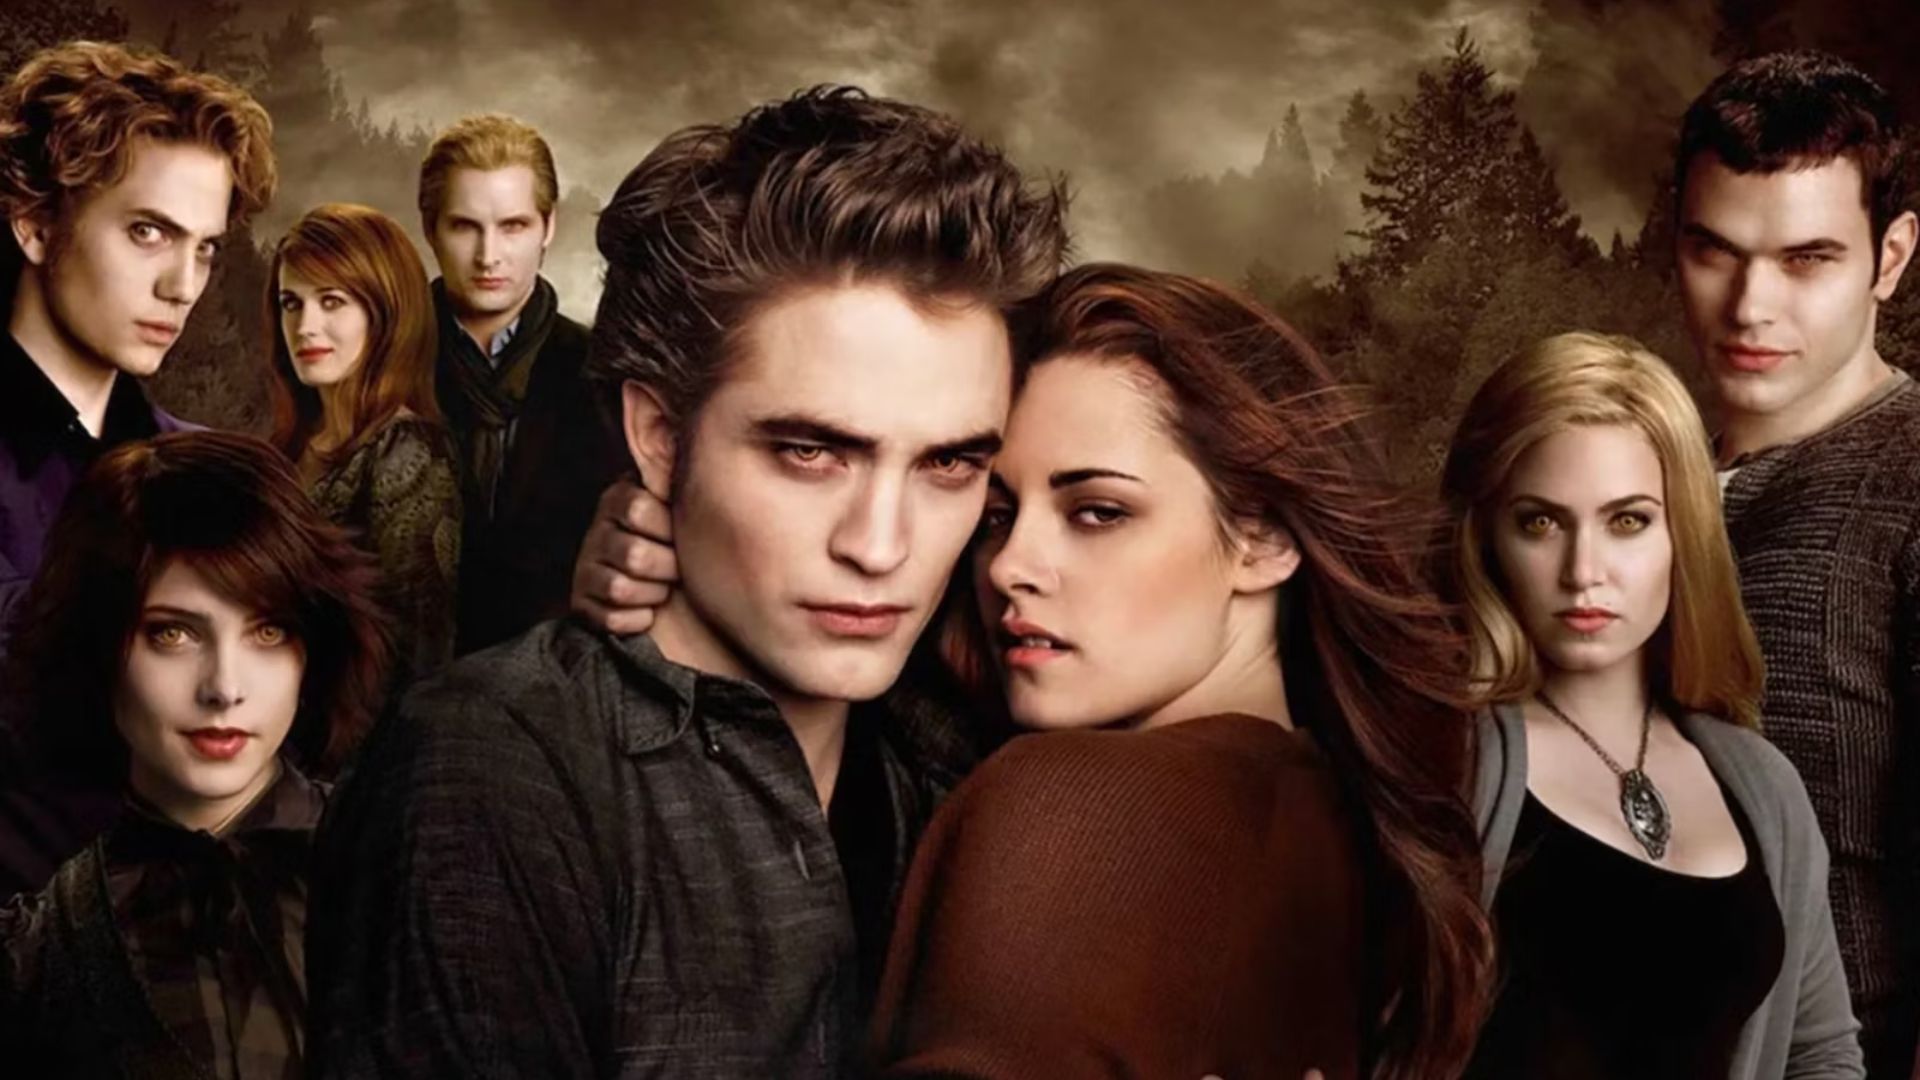 O romance de Bella Swan e Edward Cullen será adaptado para uma série de "Crespúculo" (Foto: Divulgação)